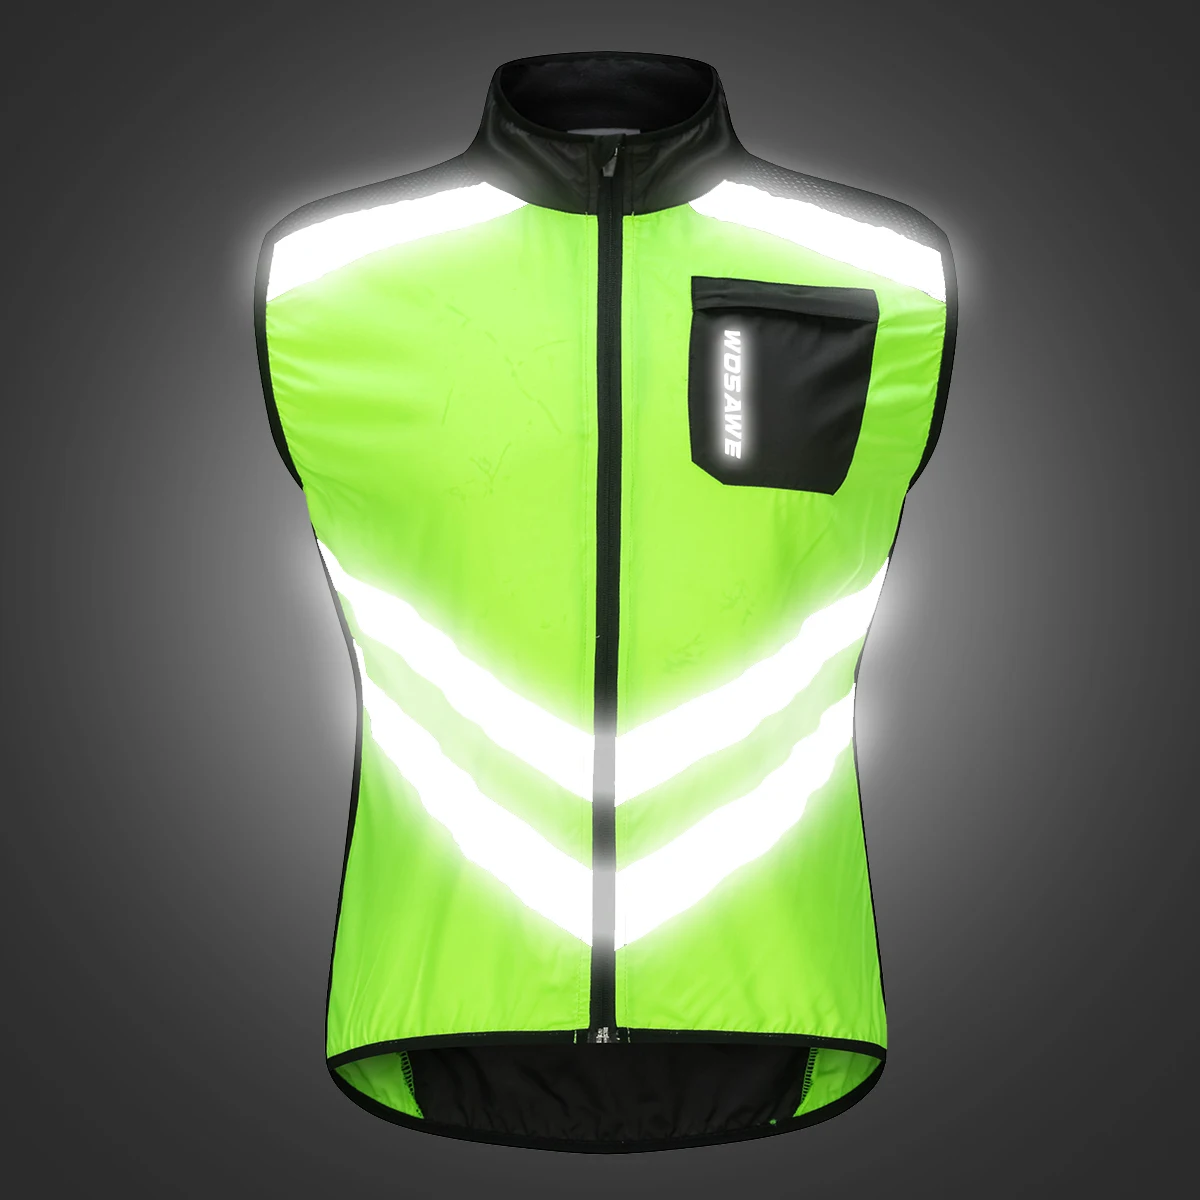 WOSAWE дышащие светоотражающие куртки для женщин и мужчин для велоспорта, велосипедный жилет, штормовка, велосипедная одежда для горного велосипеда, водоотталкивающая ветровка - Цвет: BL208G